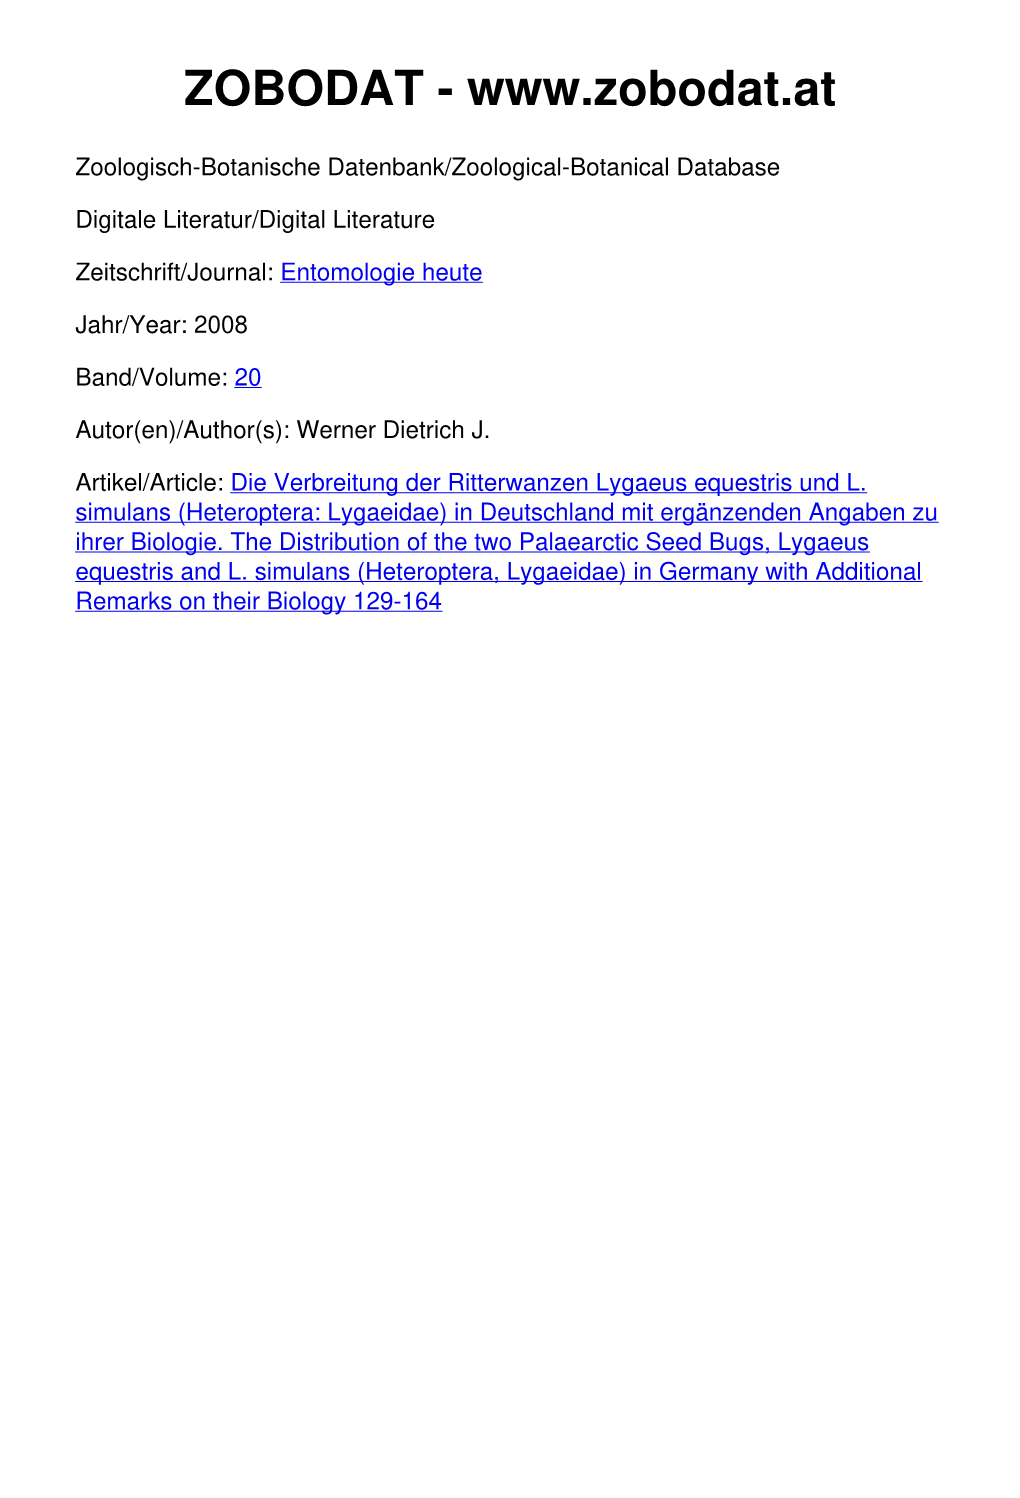 Die Verbreitung Der Ritterwanzen Lygaeus Equestris Und L. Simulans (Heteroptera: Lygaeidae) in Deutschland Mit Ergänzenden Angaben Zu Ihrer Biologie